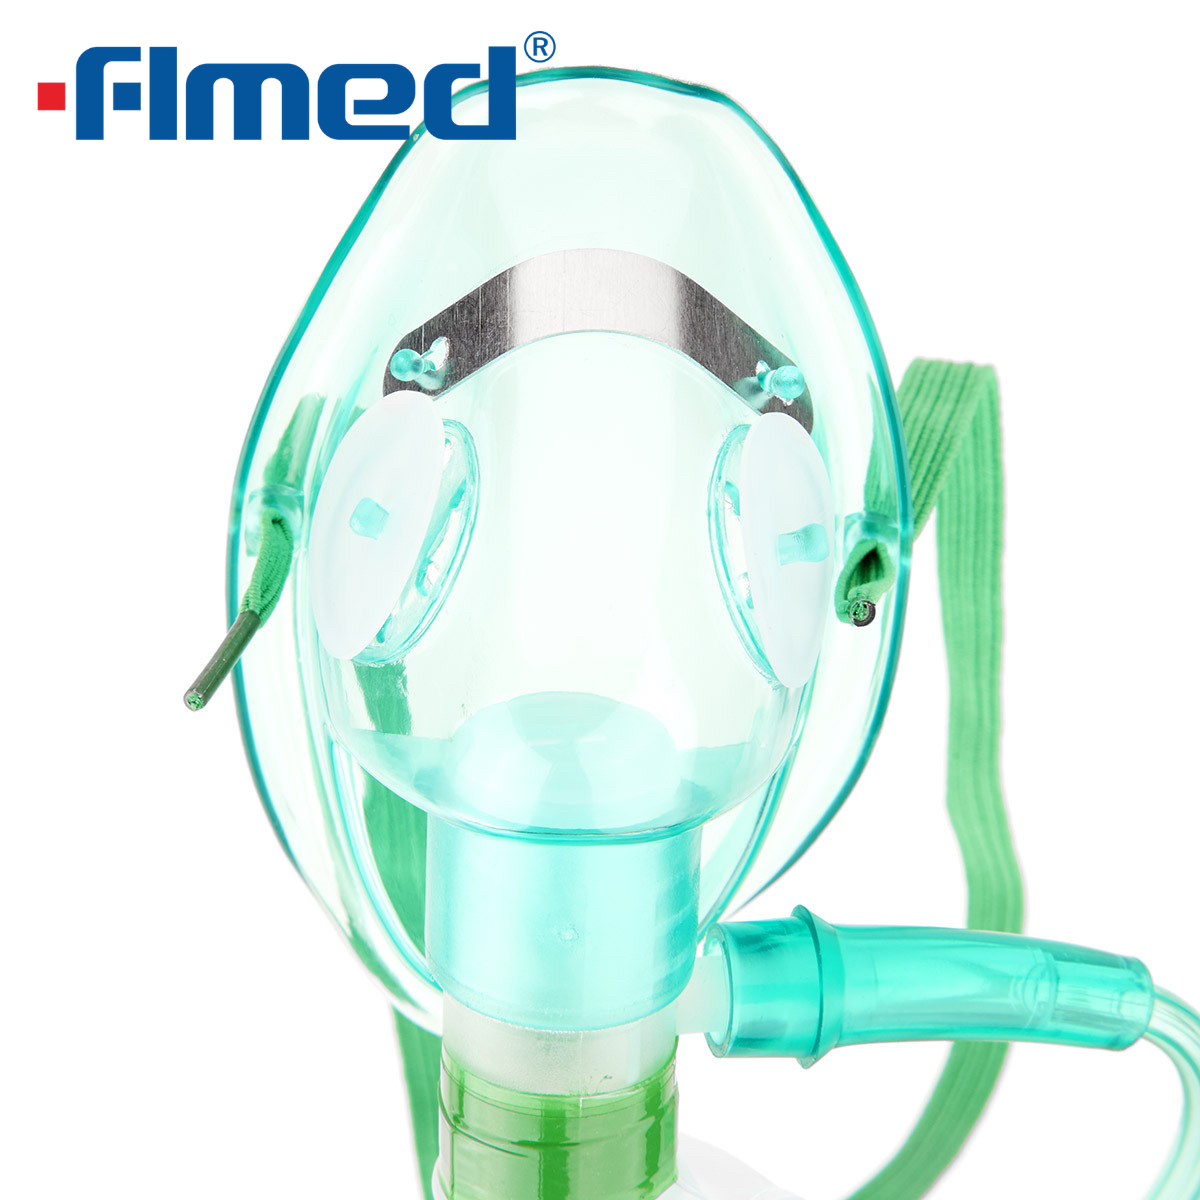 Masque à l'oxygène avec réservoir et tubes (adulte) du fabricant